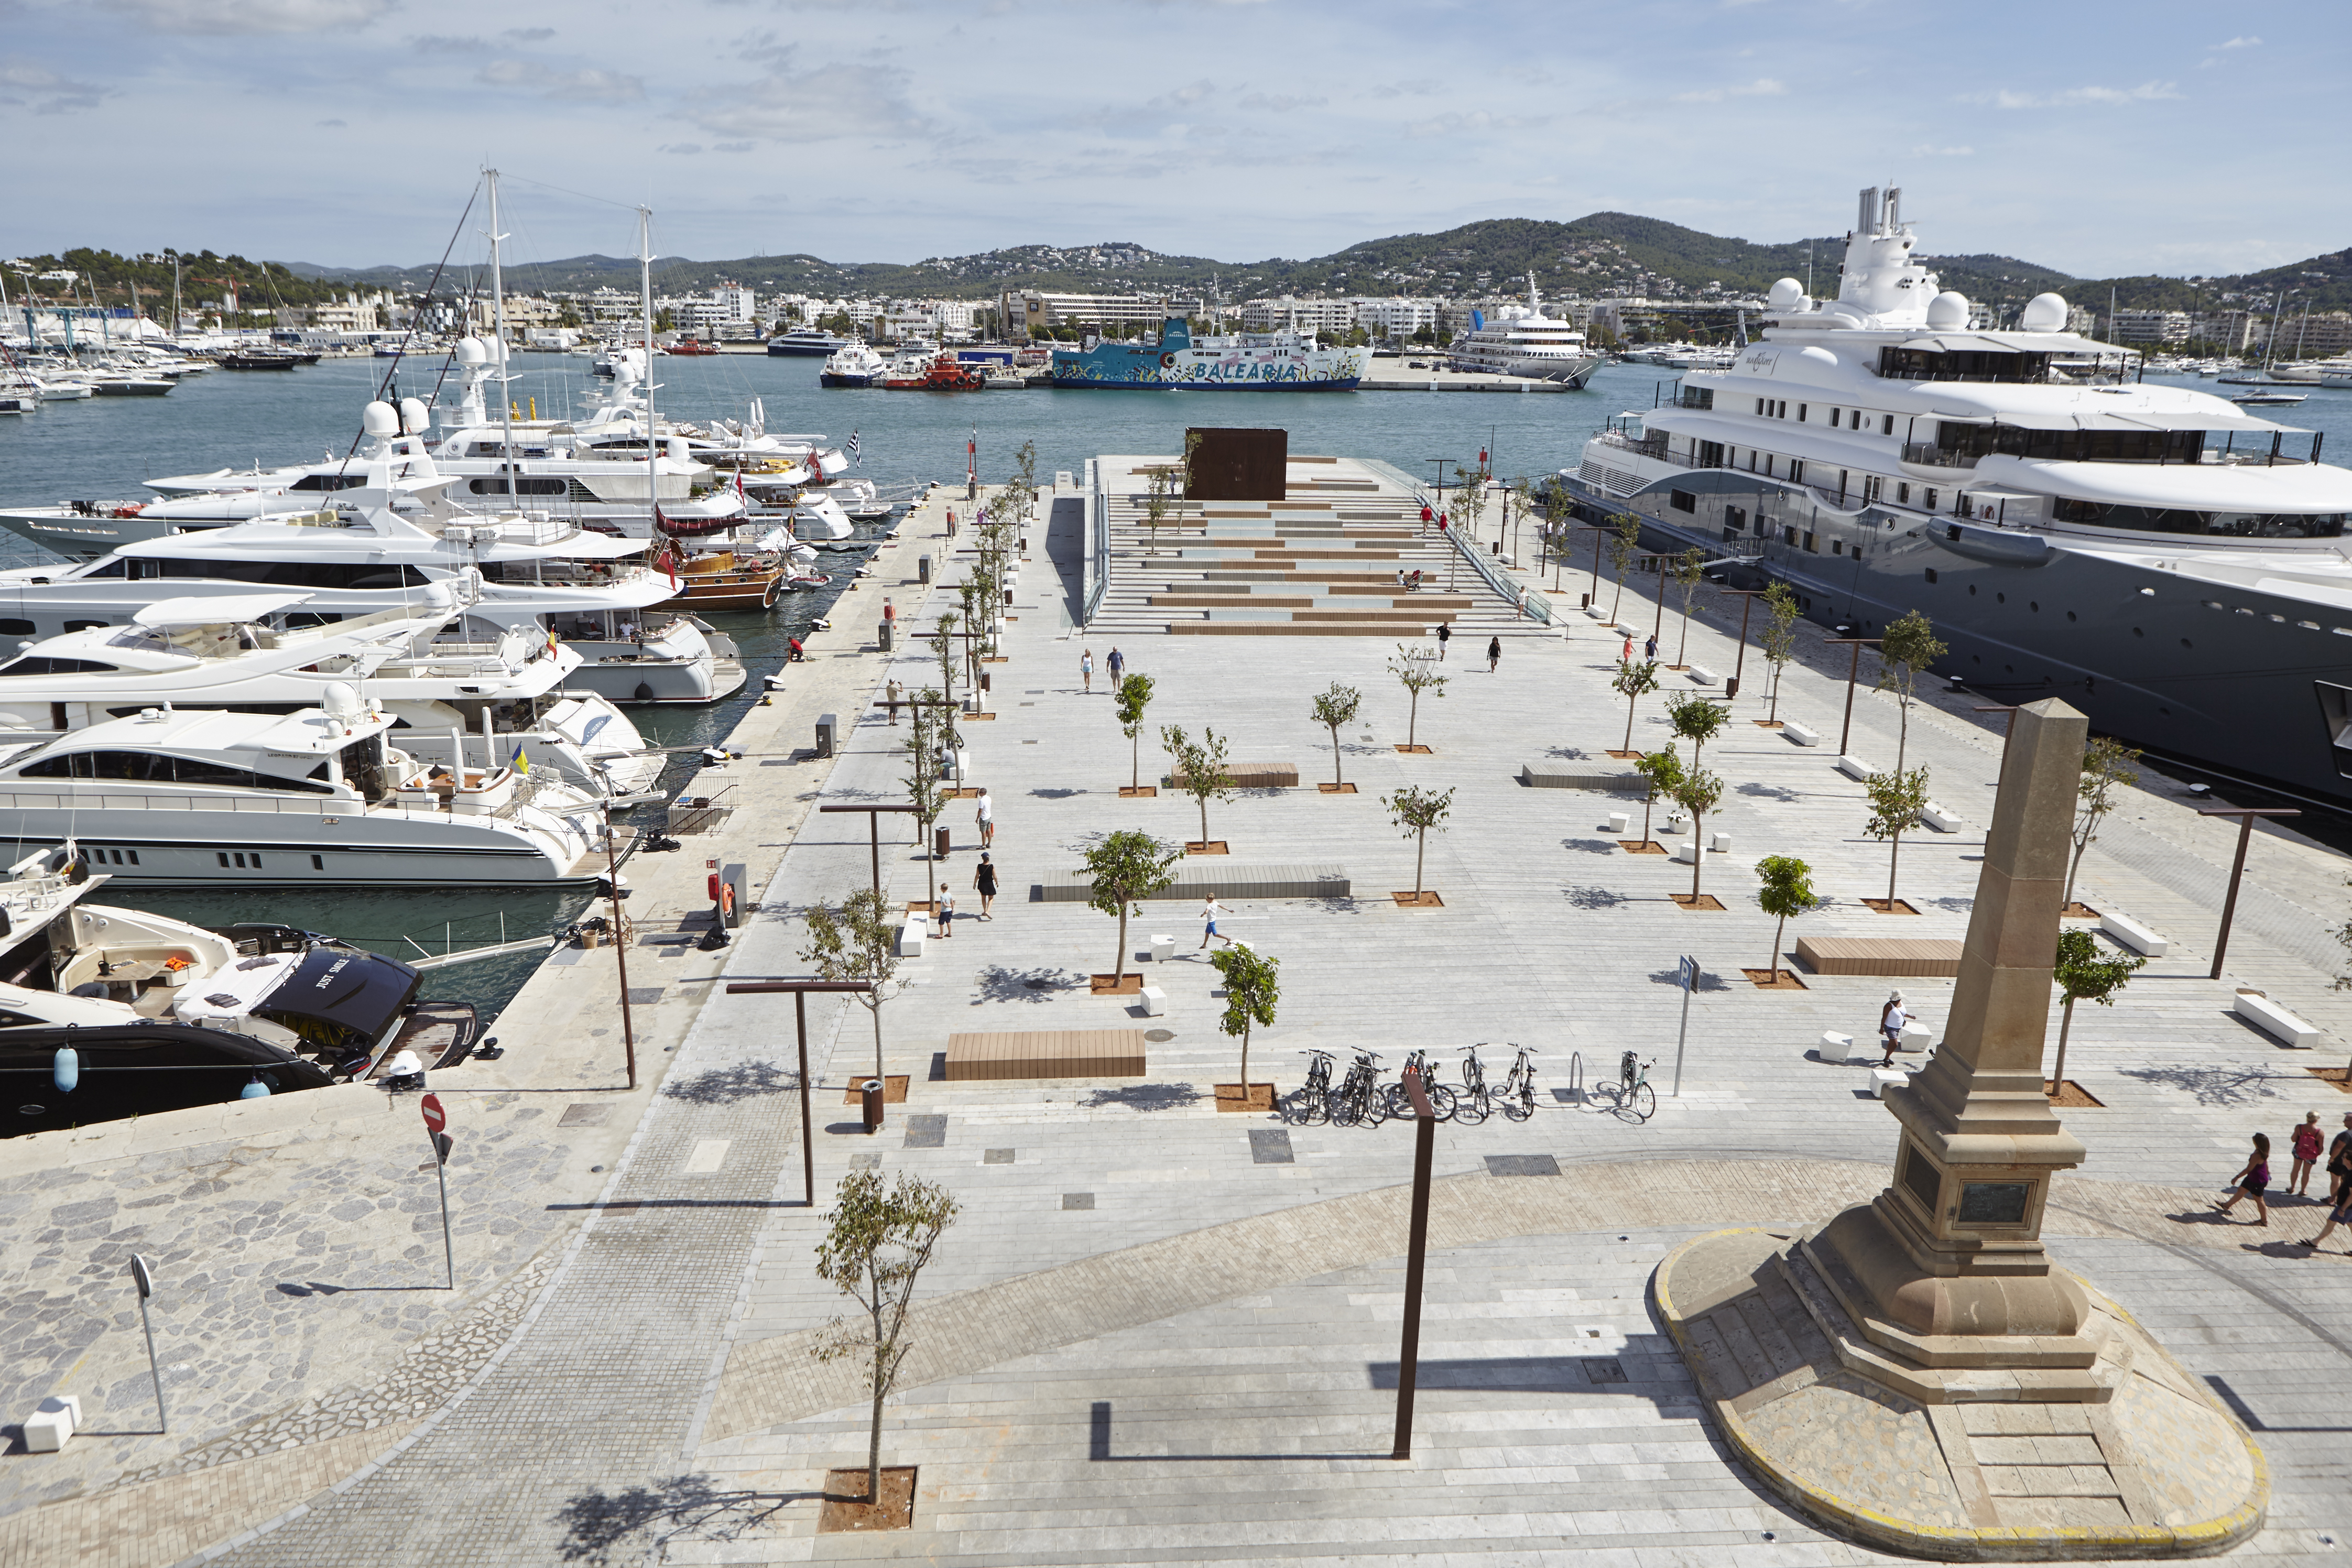 L'APB adjudica a Igy Gestora Marinas Spain la gestió dels amarratges de grans eslores de la dàrsena de Llevant del port d'Eivissa